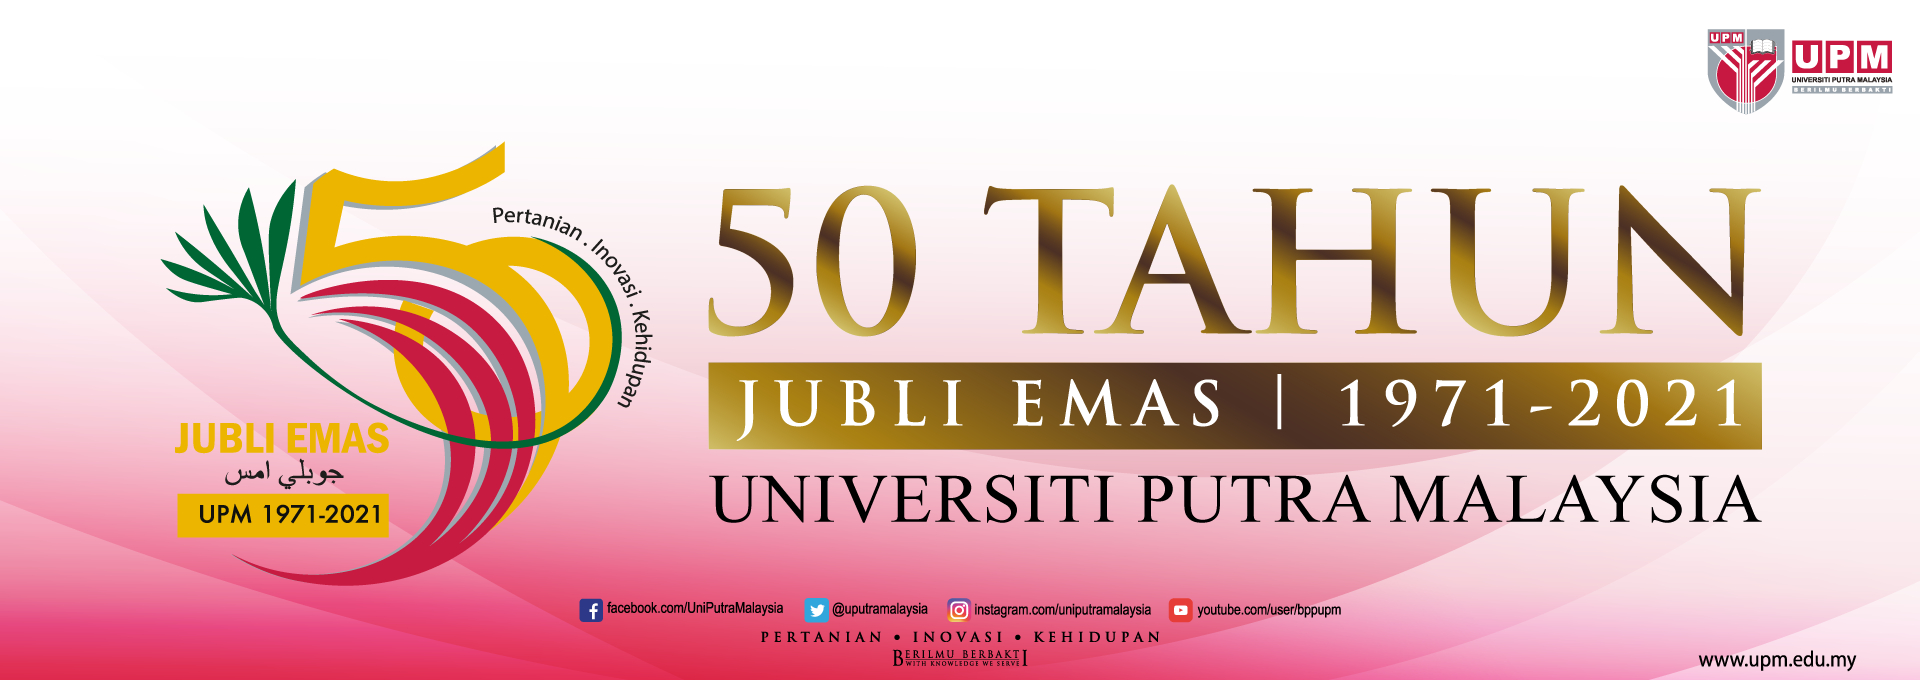 UPM50 Jubli Emas